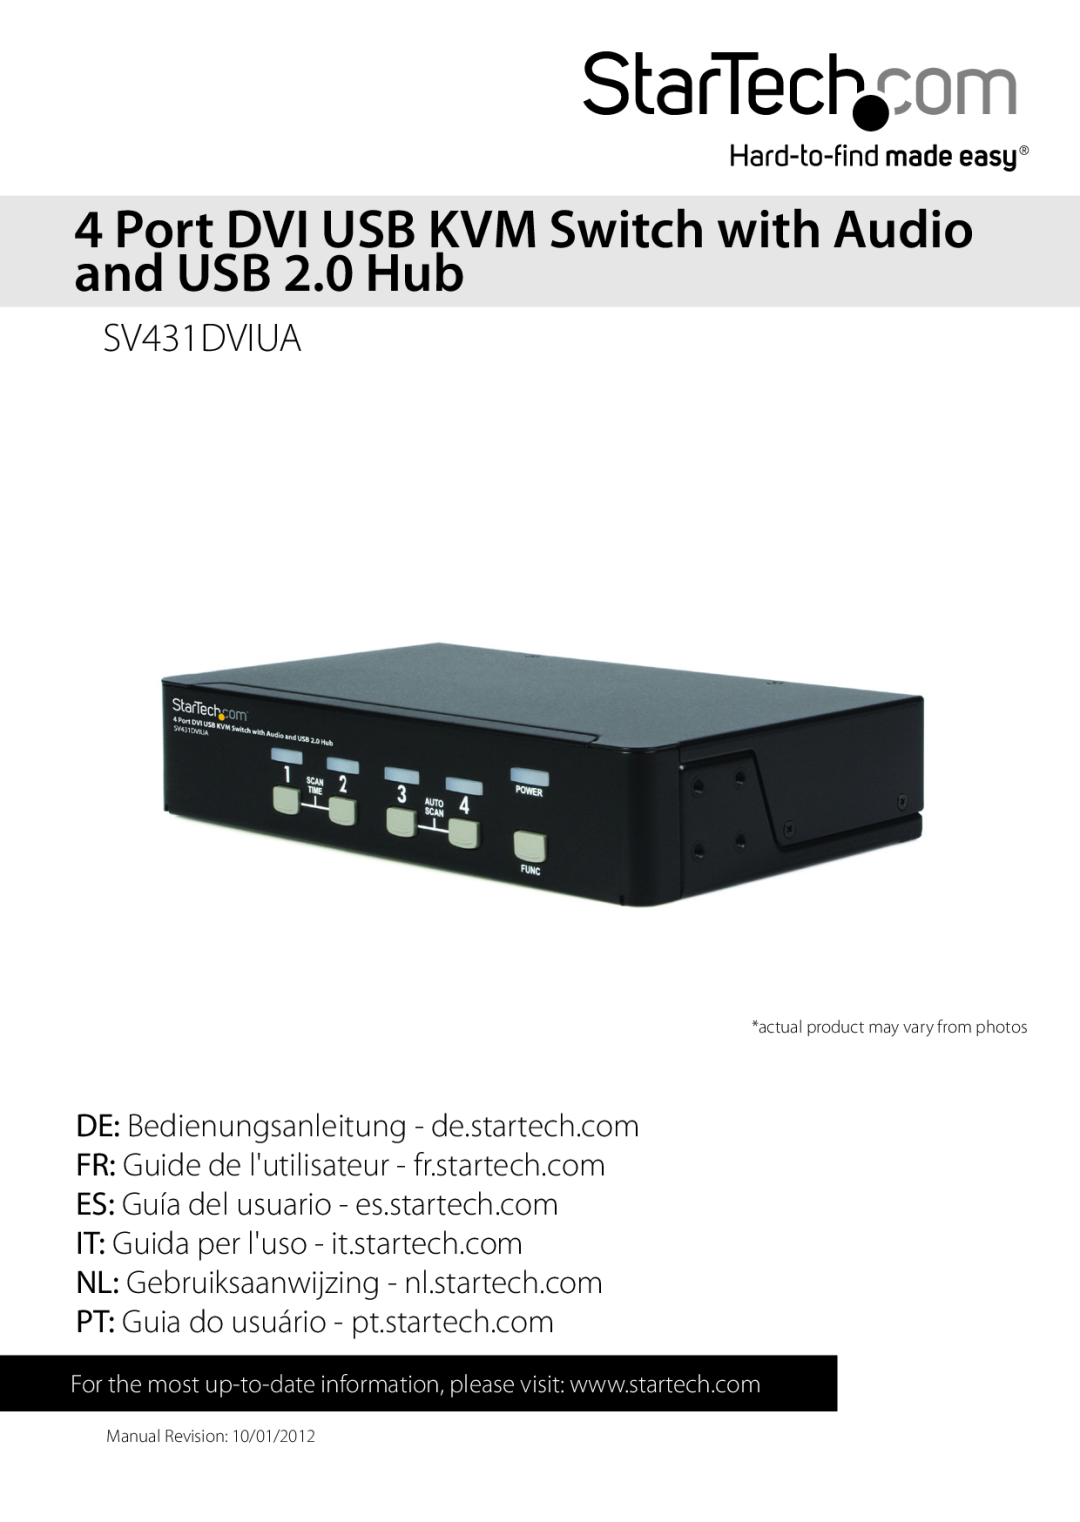 StarTech.com SV431-DVIUA manual Port DVI USB KVM Switch with Audio and USB 2.0 Hub, SV431DVIUA, Manual Revision 10/01/2012 